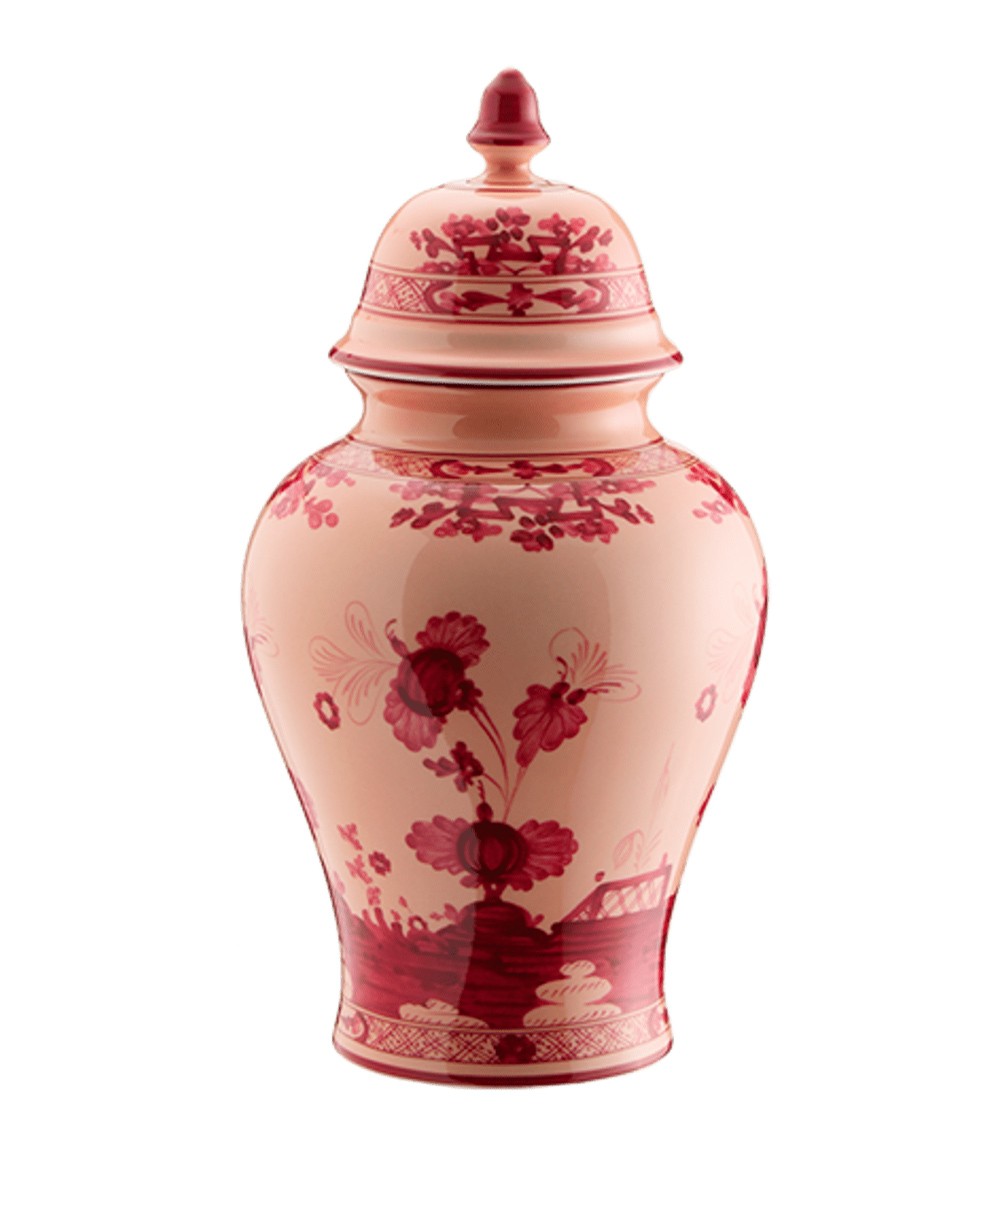 Hier sehen Sie: Oriente Italiano Potiche Vase von Ginori 1735